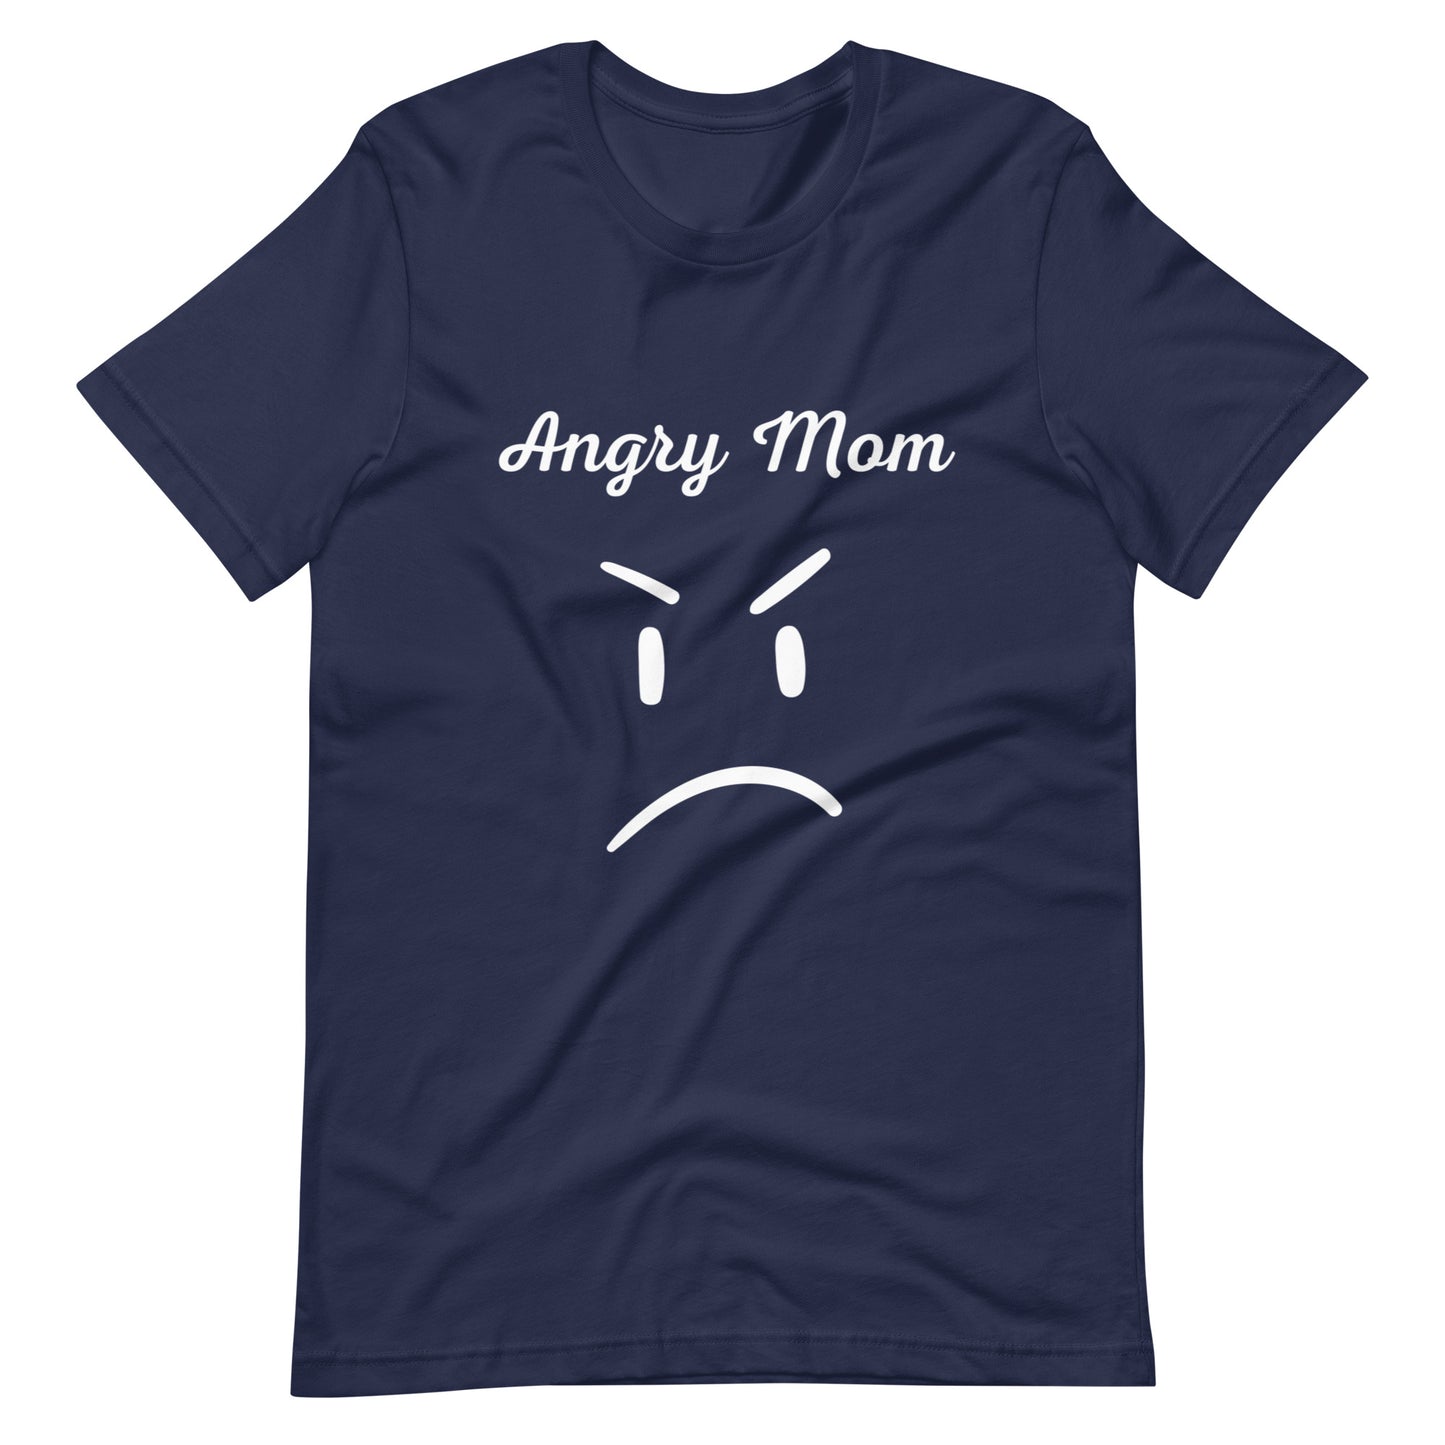 Angry mom t-shirt